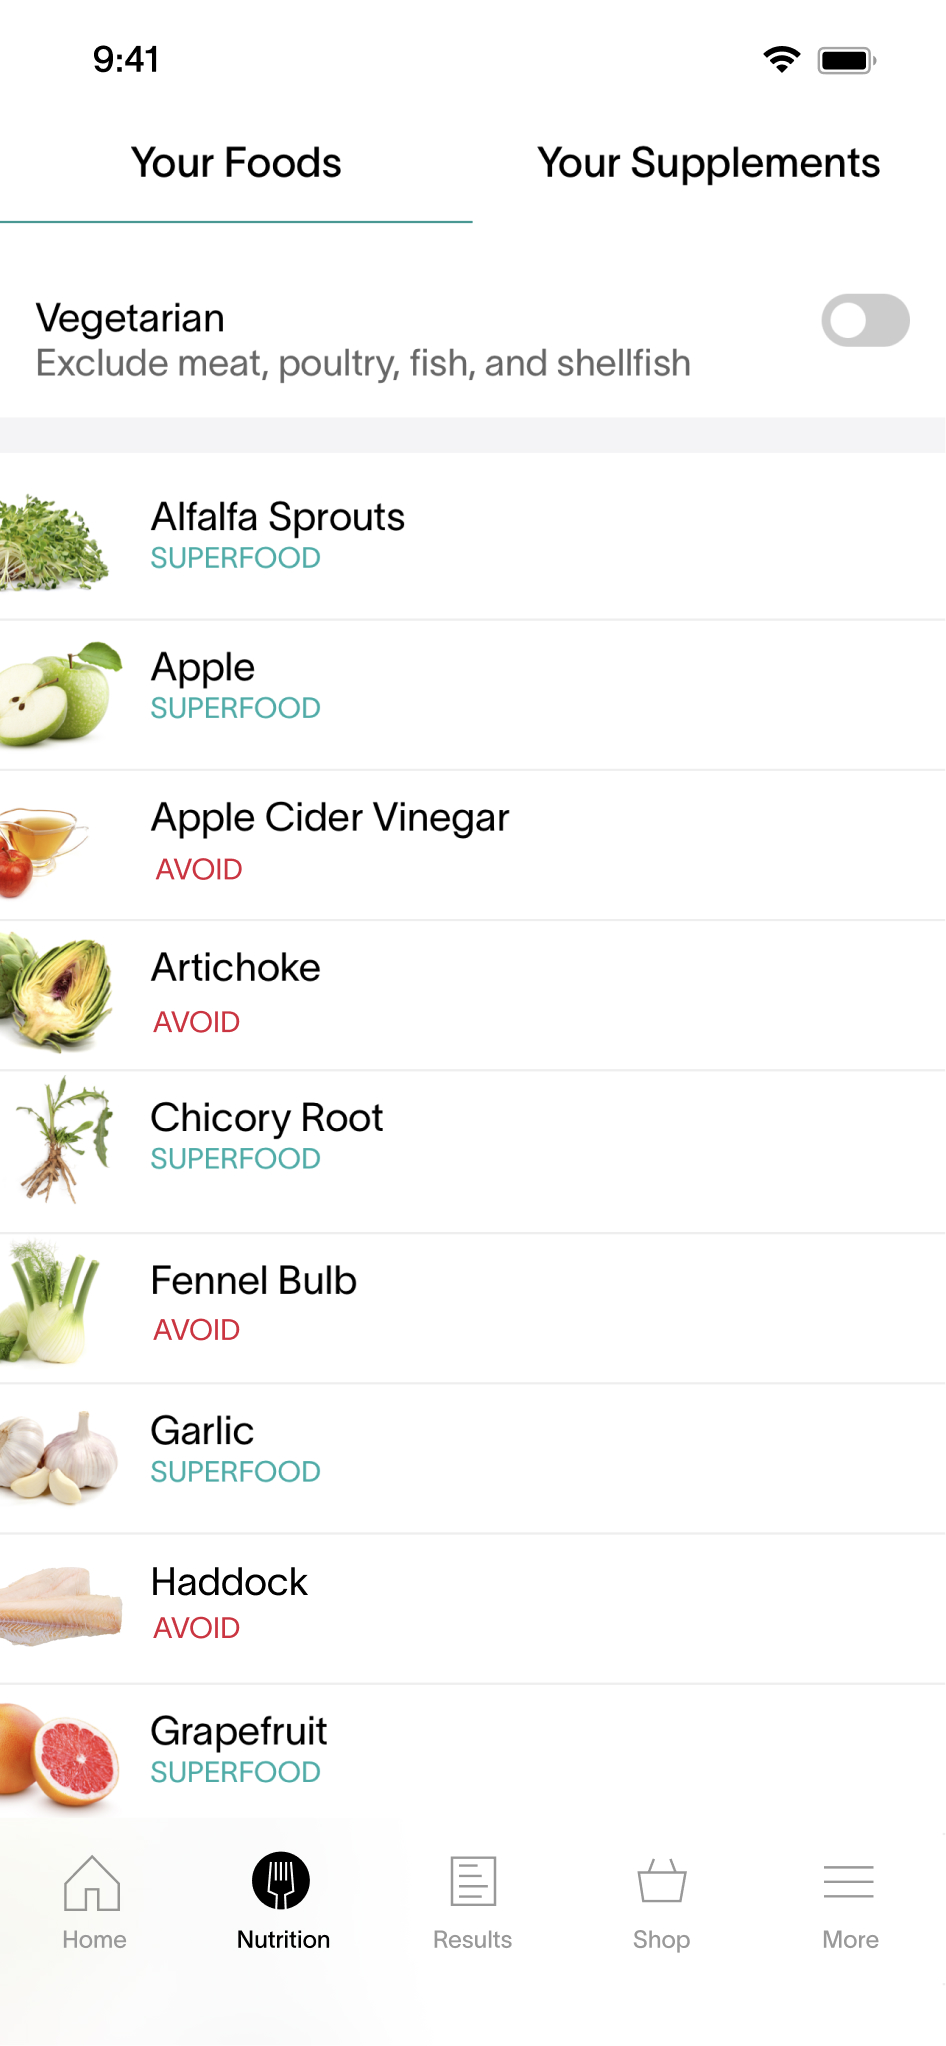 App Screen - Your Foods